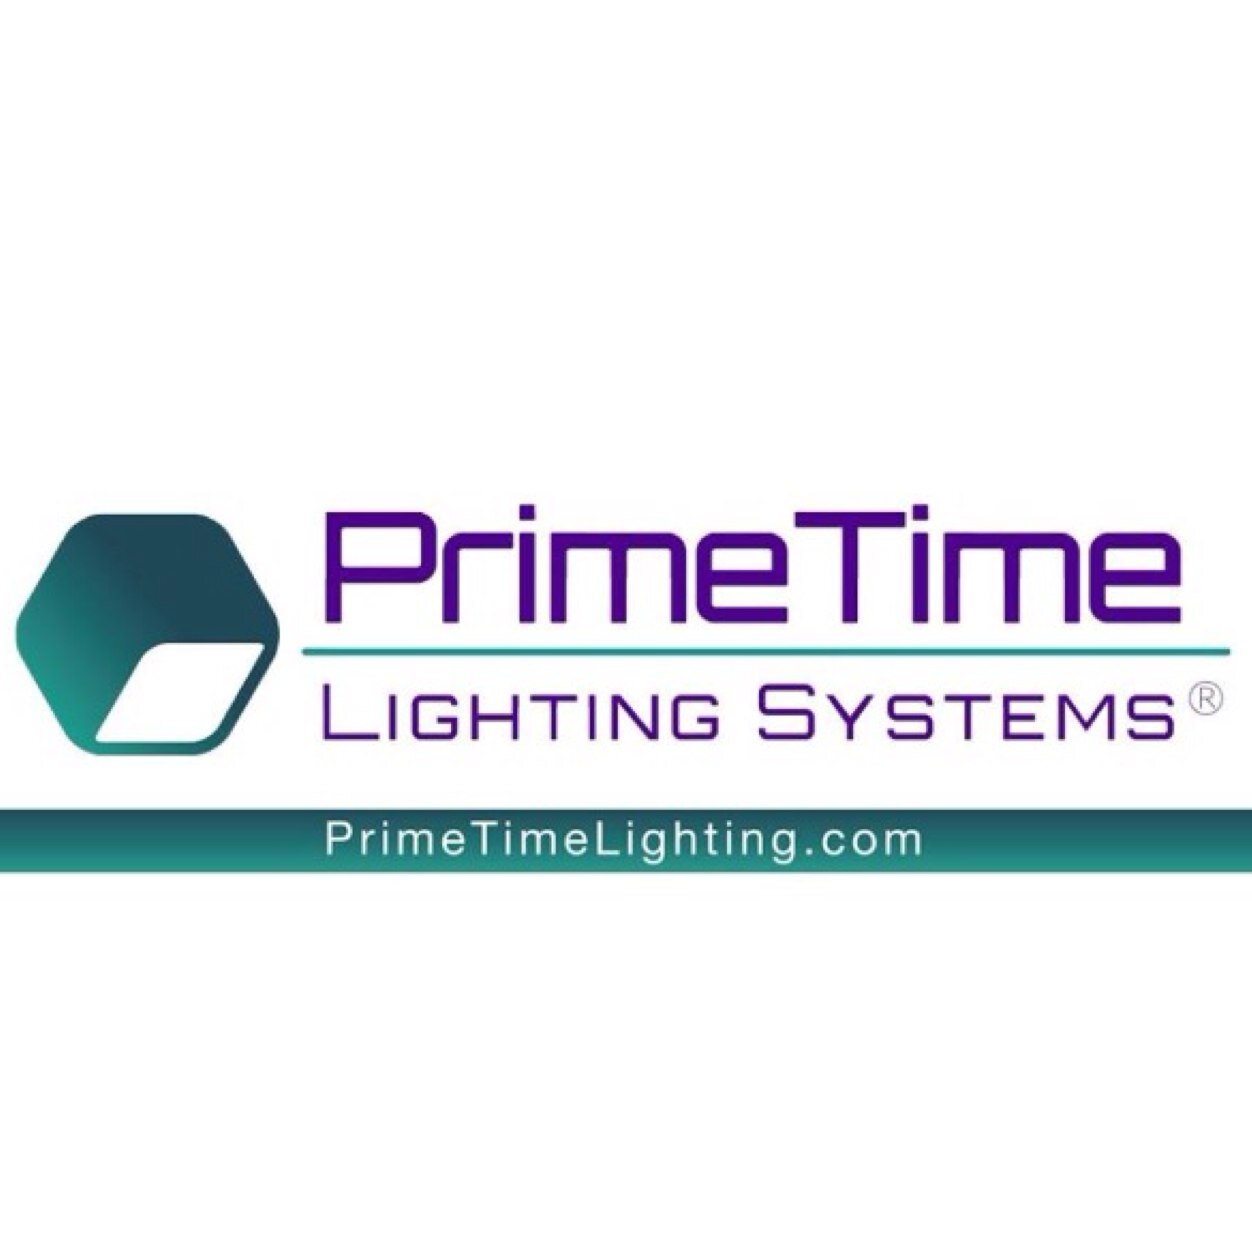 PrimeTime Lighting Systems